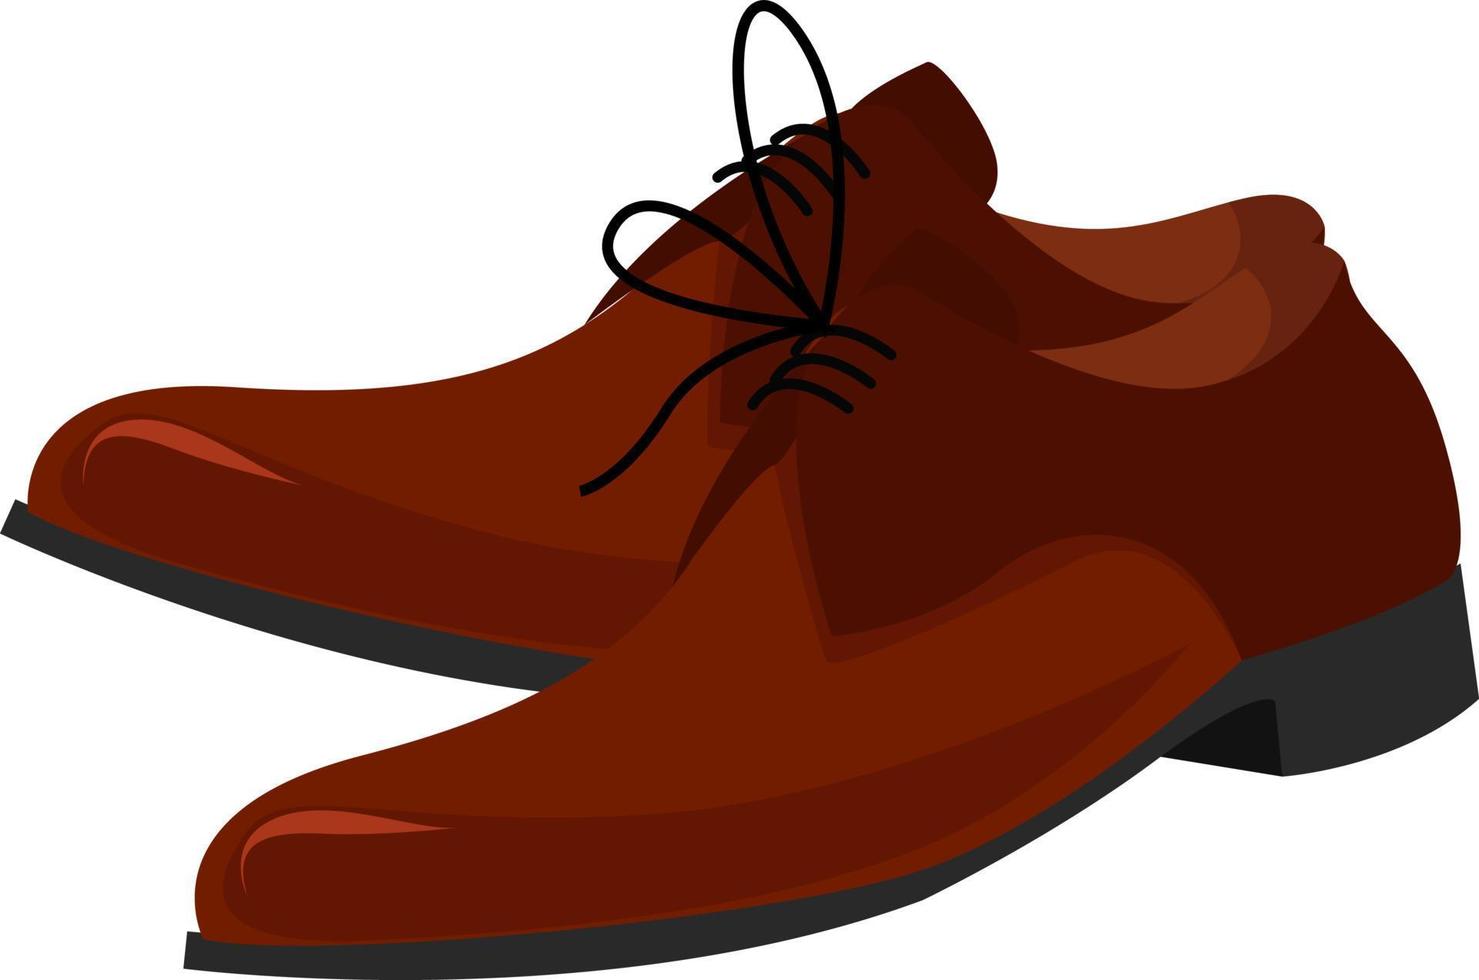 Chaussures homme marron, illustration, vecteur sur fond blanc